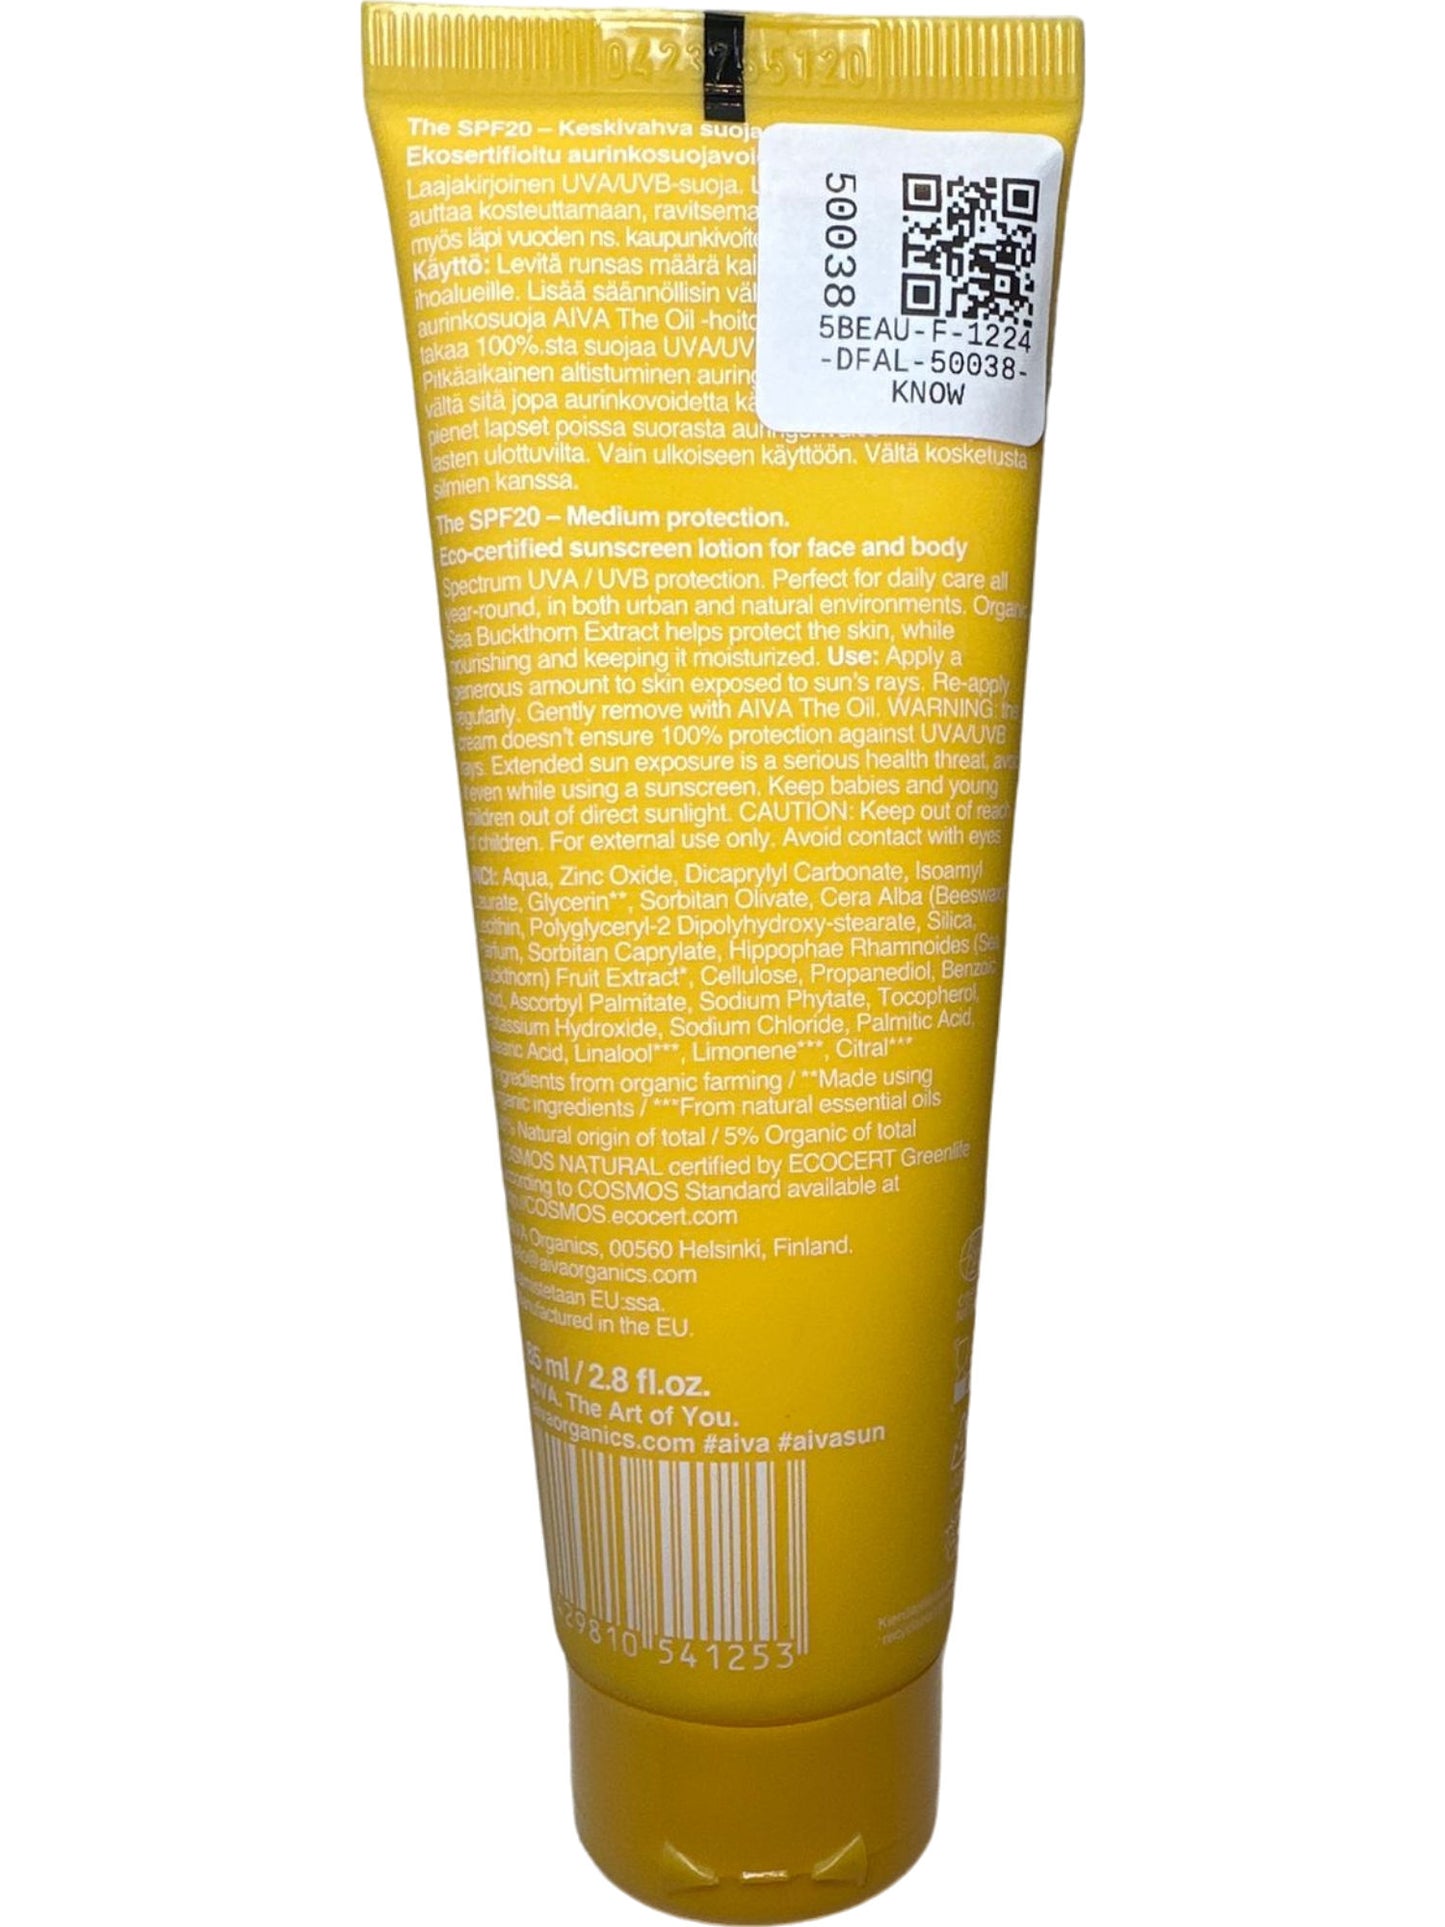 Aiva Sun Yellow SPF 20 Medium Protection Sunscreen Lotion